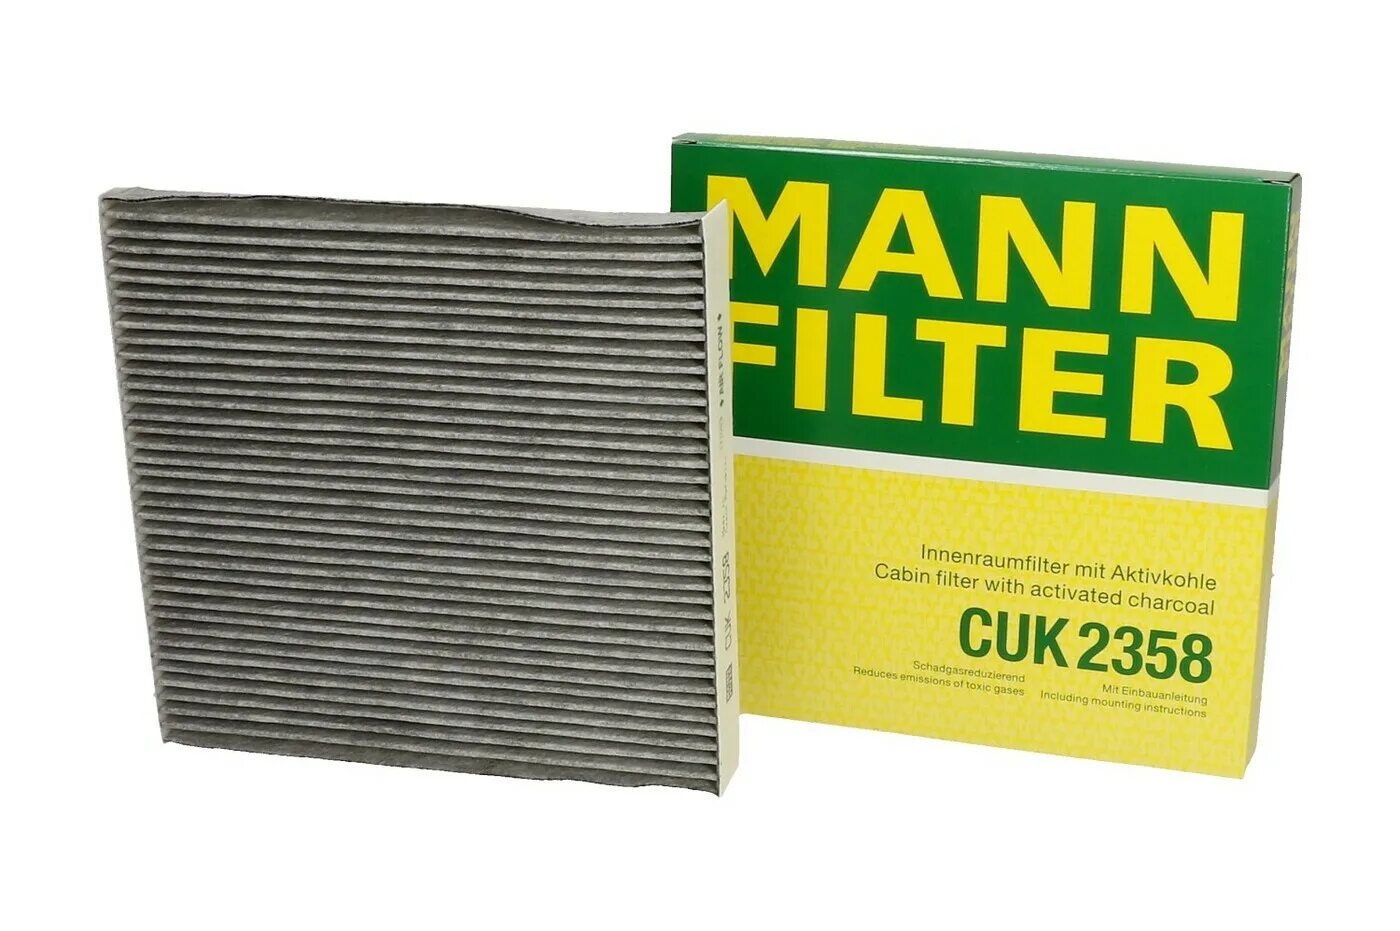 Фильтр салона угольный CUK 2131 Mann-Filter. Фильтр Mann-Filter cuk27009. Cuk2358 Mann. Фильтр Mann-Filter CUK 2246. Салонный угольный фильтр купить